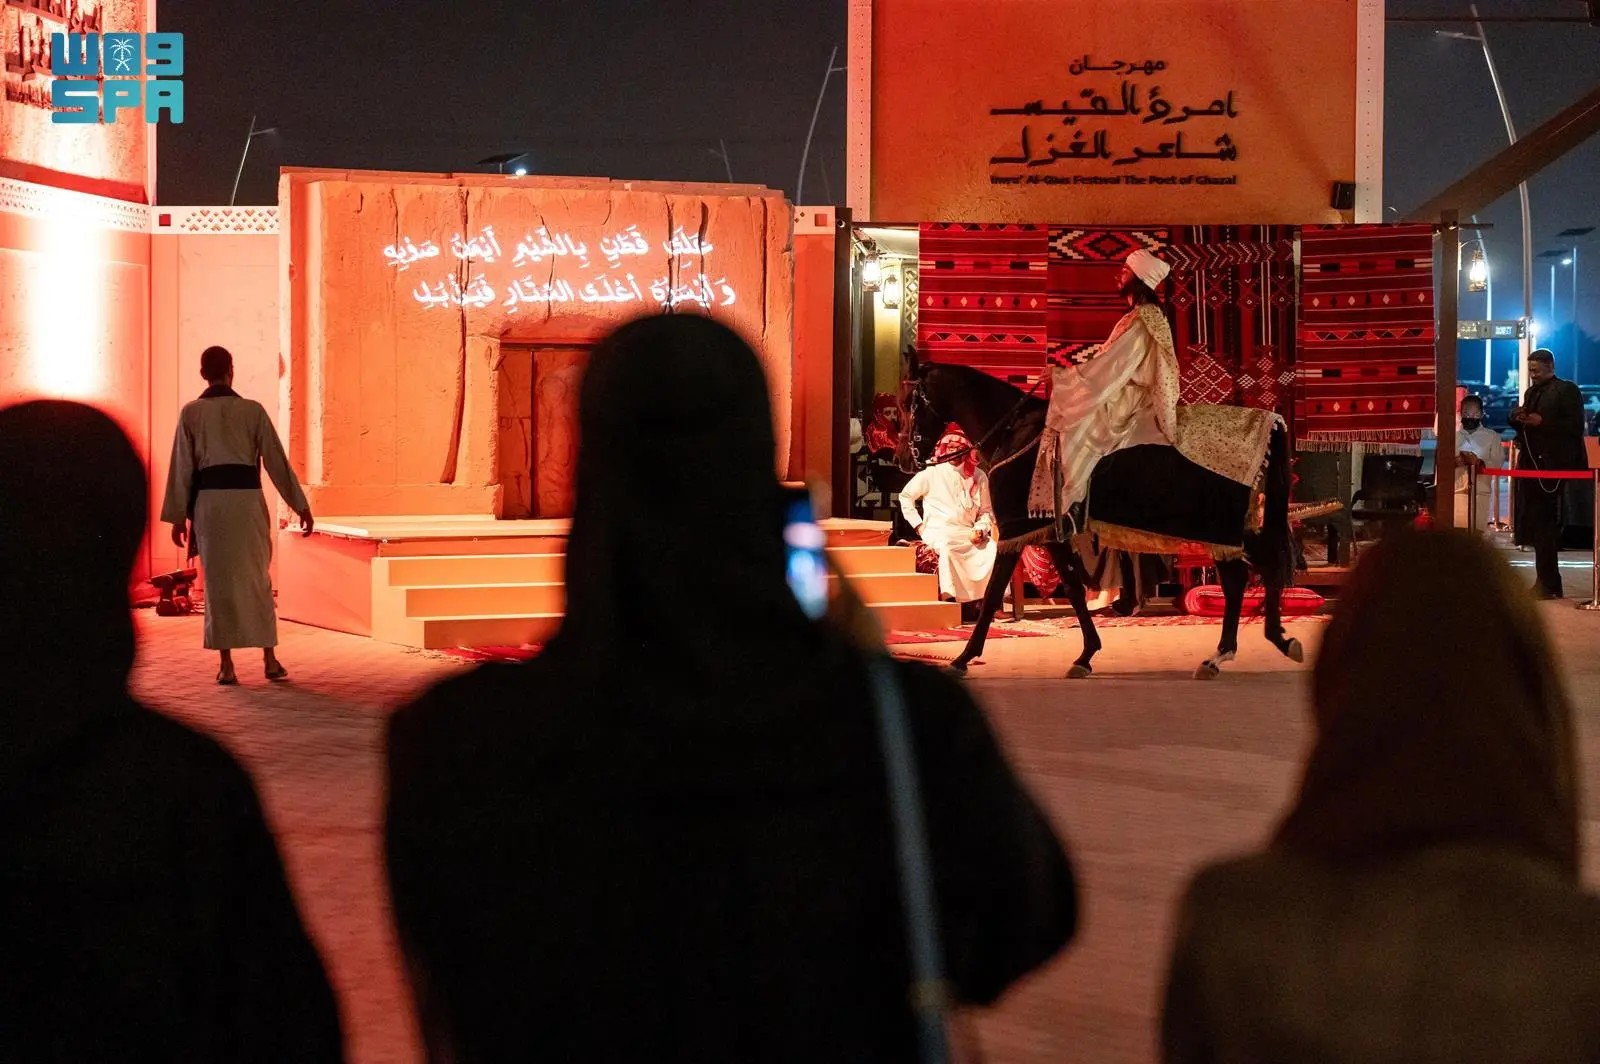 وزارة الثقافة تختتم مهرجان “امرؤ القيس شاعر الغزل” في تجربةٍ ثقافية مثيرة في الدرعية